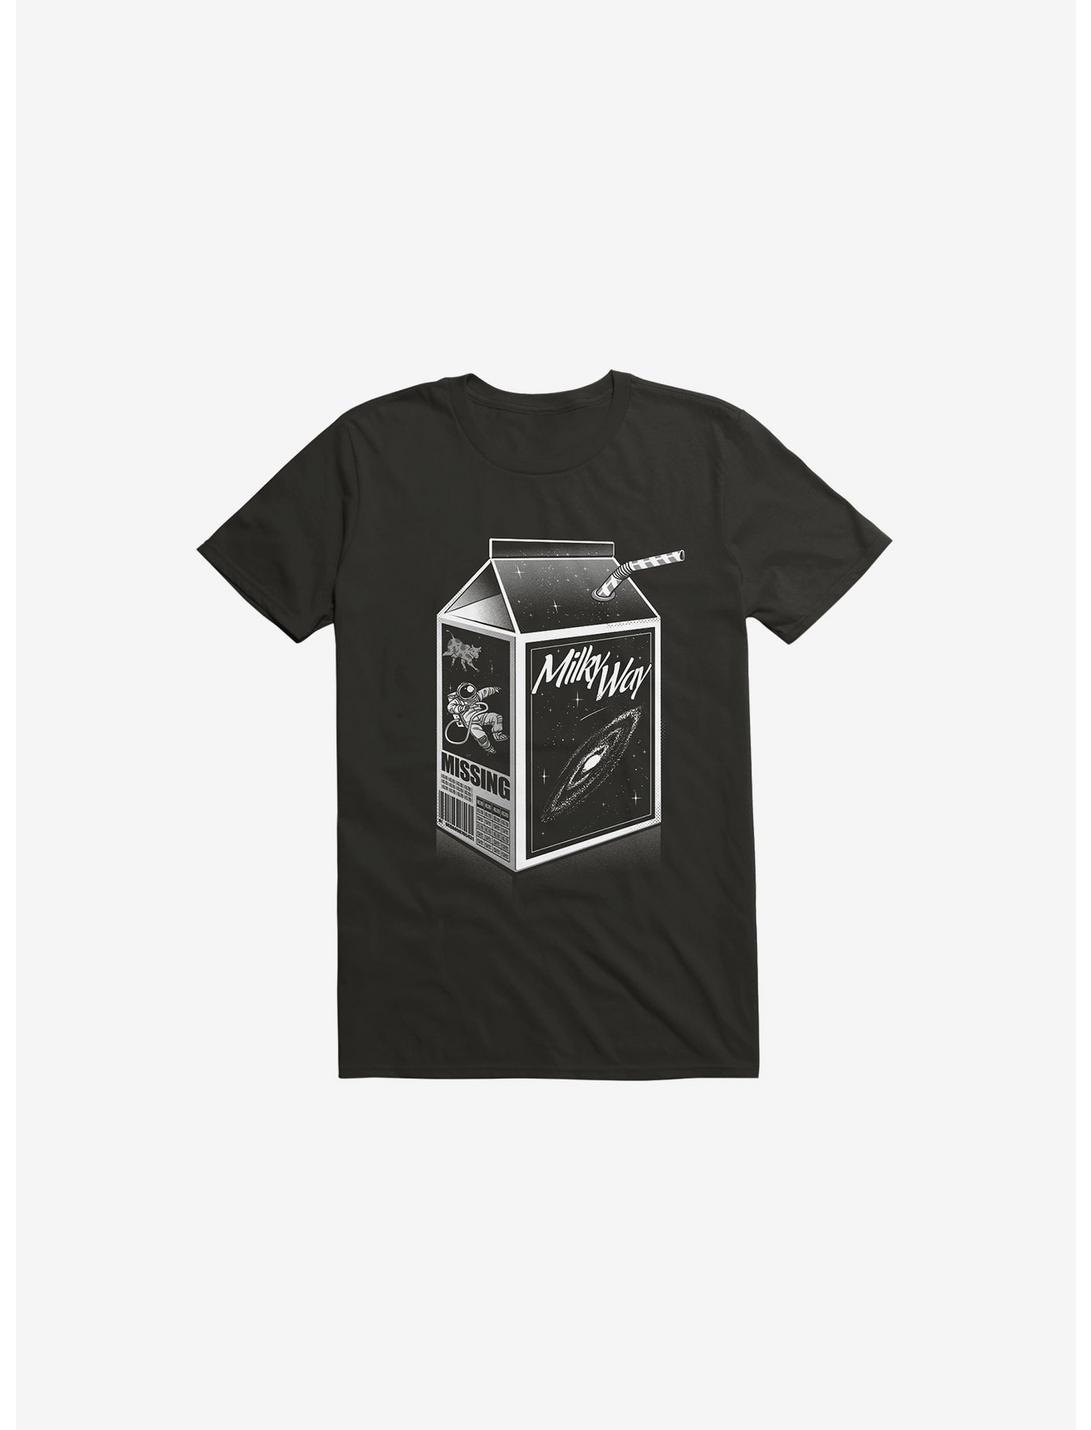 Milk Way Black T-Shirt, BLACK, hi-res